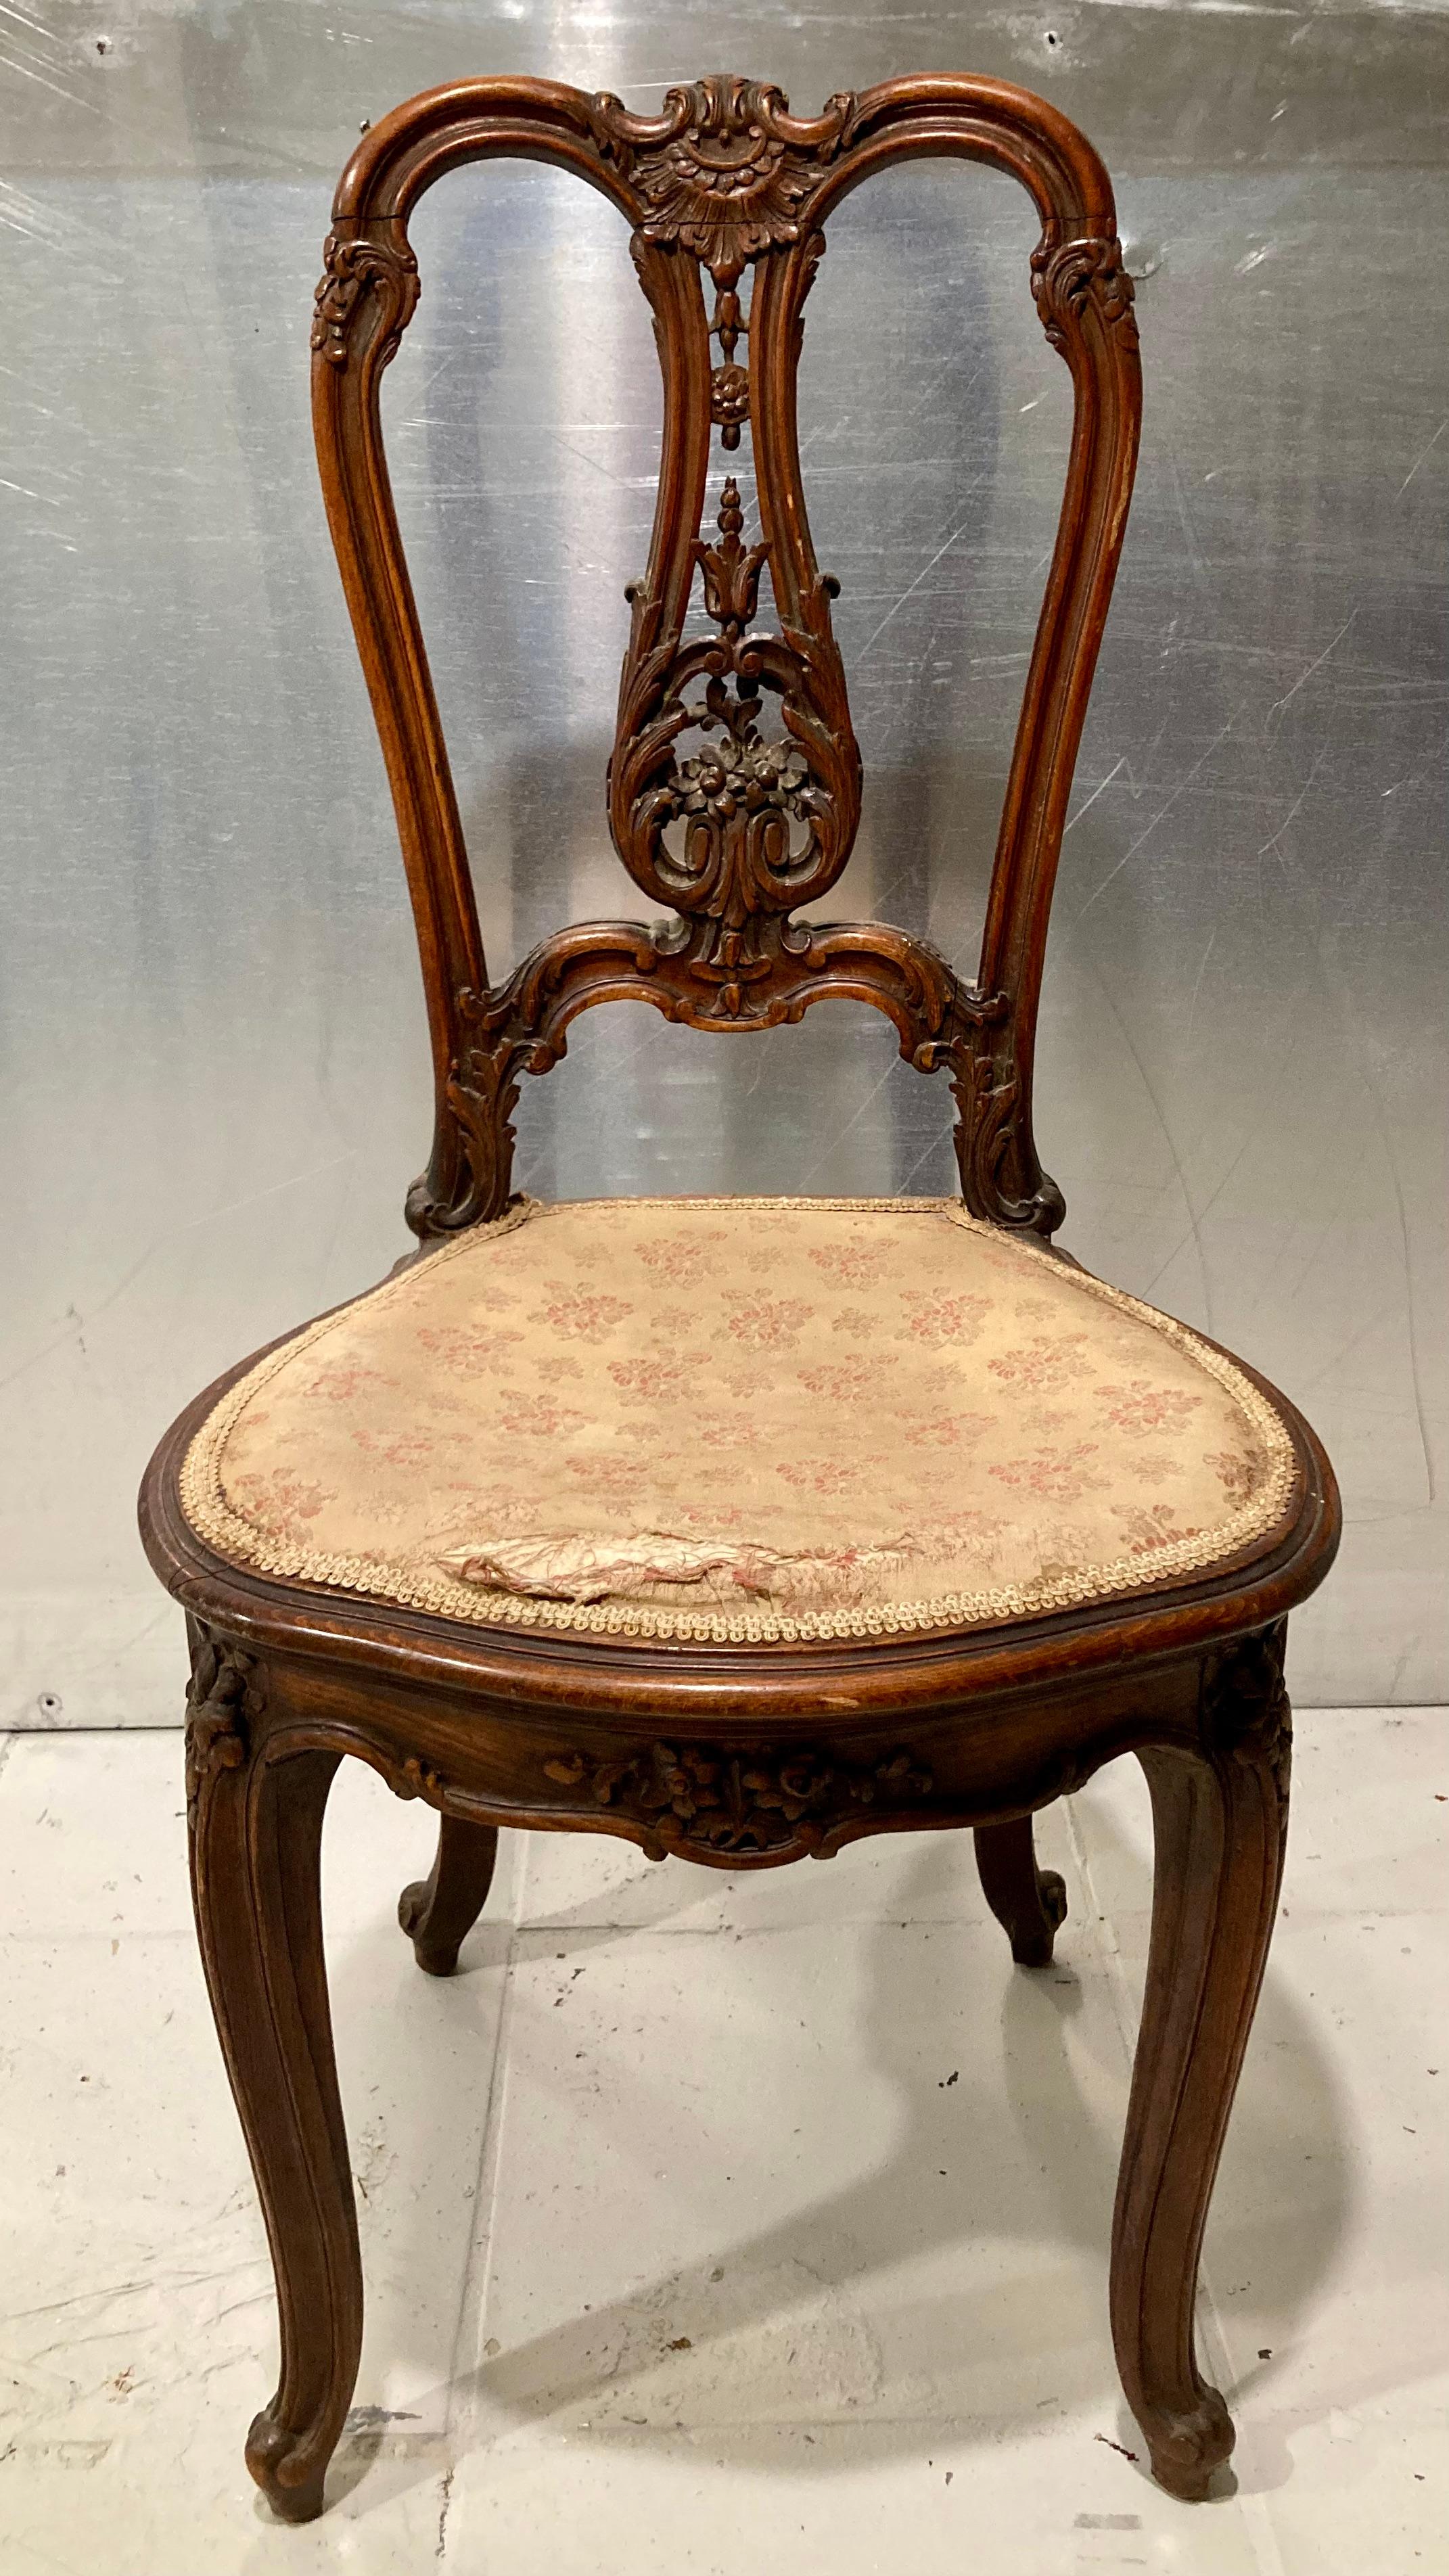 Magnifique chaise de bureau Louis XV. Finition originale du cadre et du coussin d'assise. Magnifique finition d'origine sur le cadre et peut facilement être recouvert de votre tissu préféré.